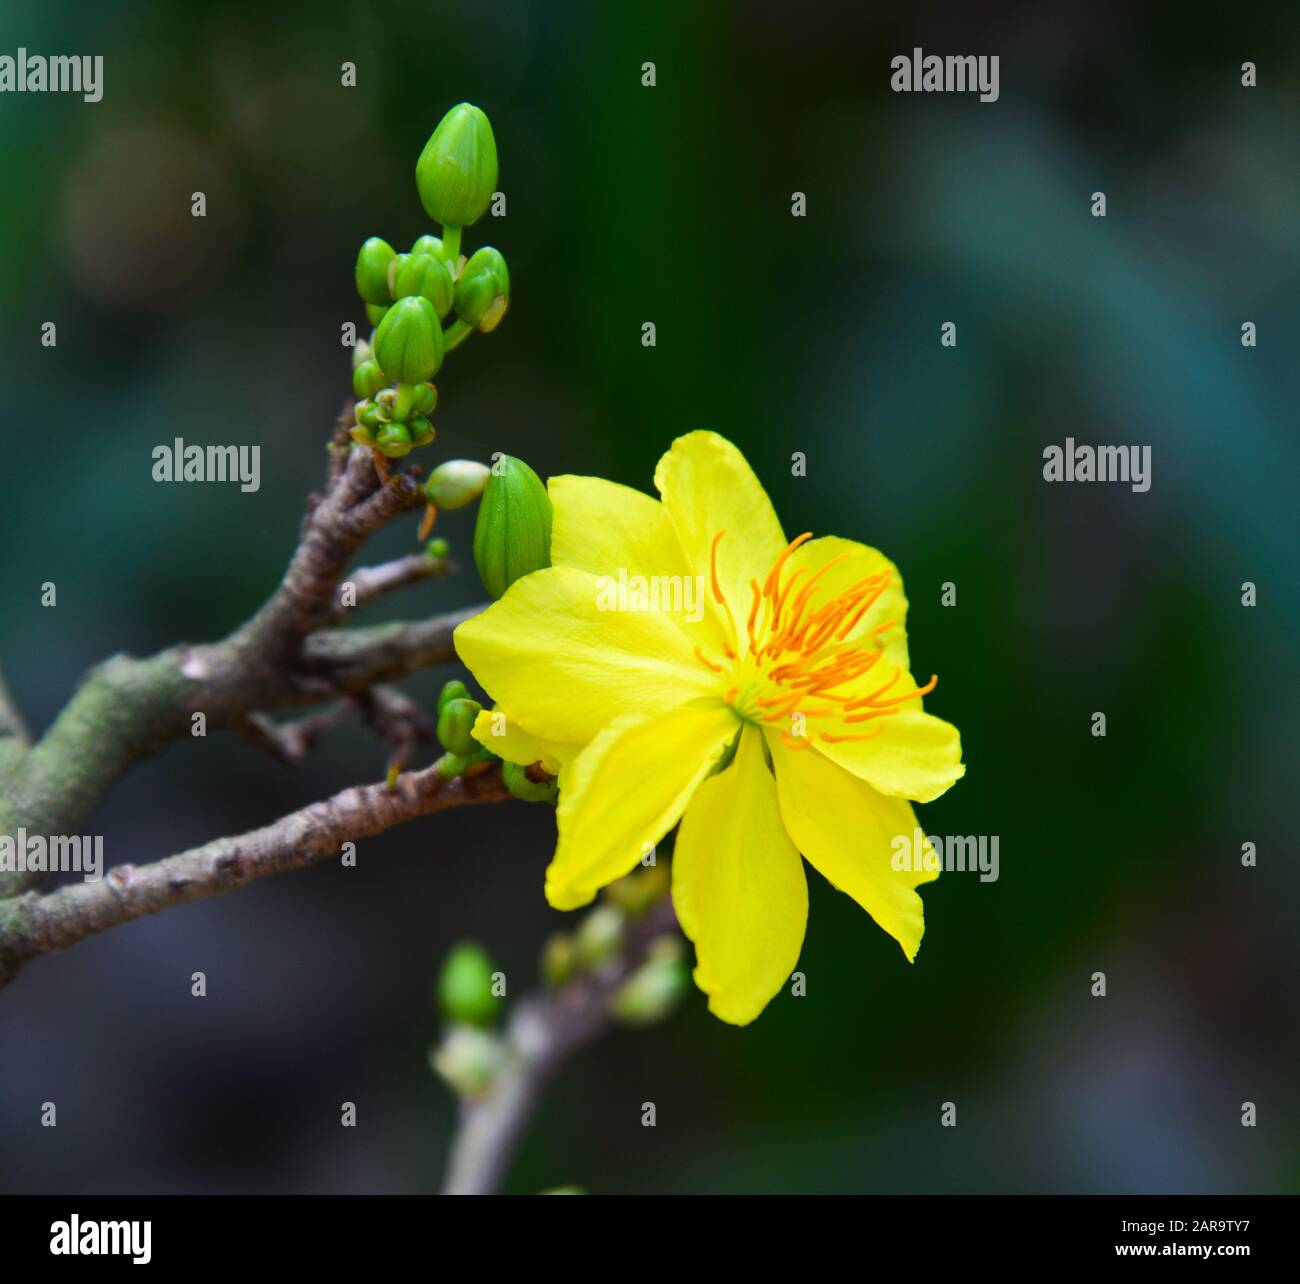 Ochna integerrima là loài cây cực kỳ đặc biệt, đem lại sự lộng lẫy và quý phái cho mọi không gian. Hình ảnh chụp hoa Ochna integerrima trong mùa xuân sẽ khiến bạn cảm thấy hài lòng và hứng thú với vẻ đẹp tự nhiên của Việt Nam.